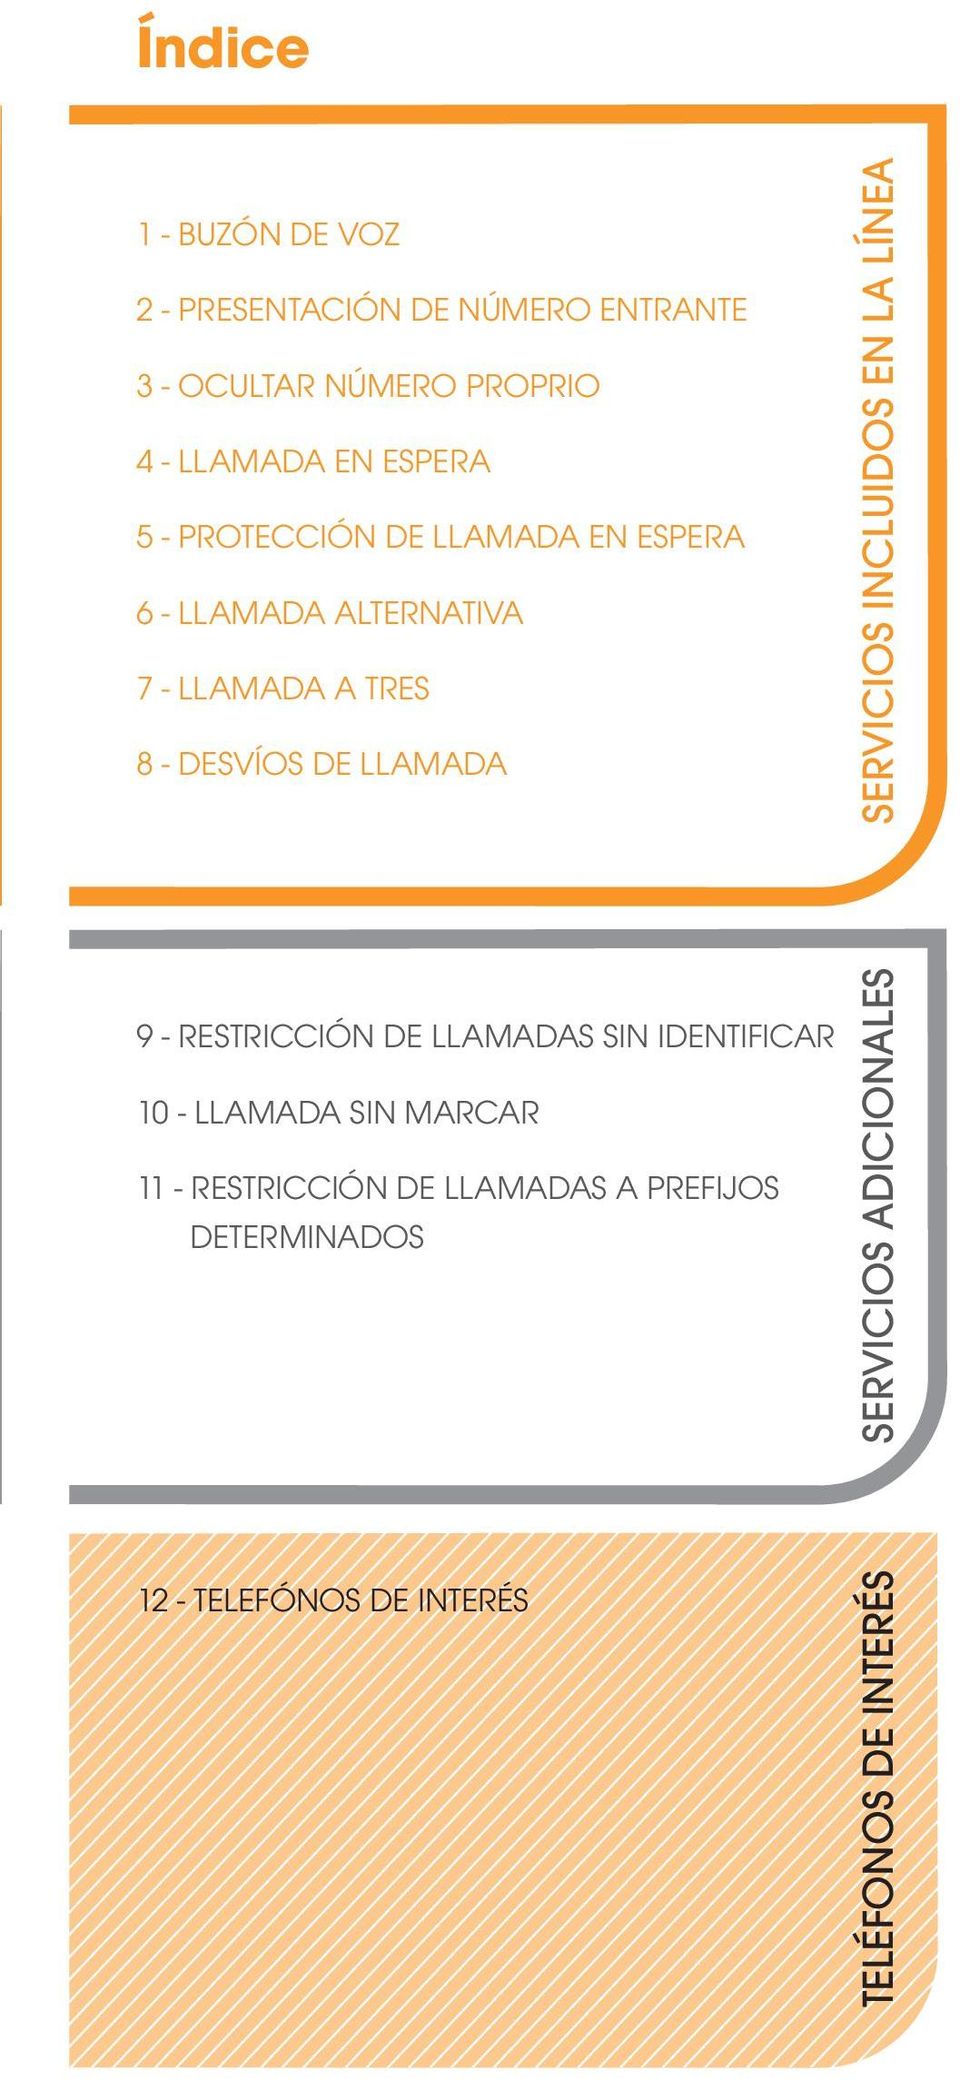 LLAMADA 9 - RESTRICCIÓN DE LLAMADAS SIN IDENTIFICAR 10 - LLAMADA SIN MARCAR 11 - RESTRICCIÓN DE LLAMADAS A